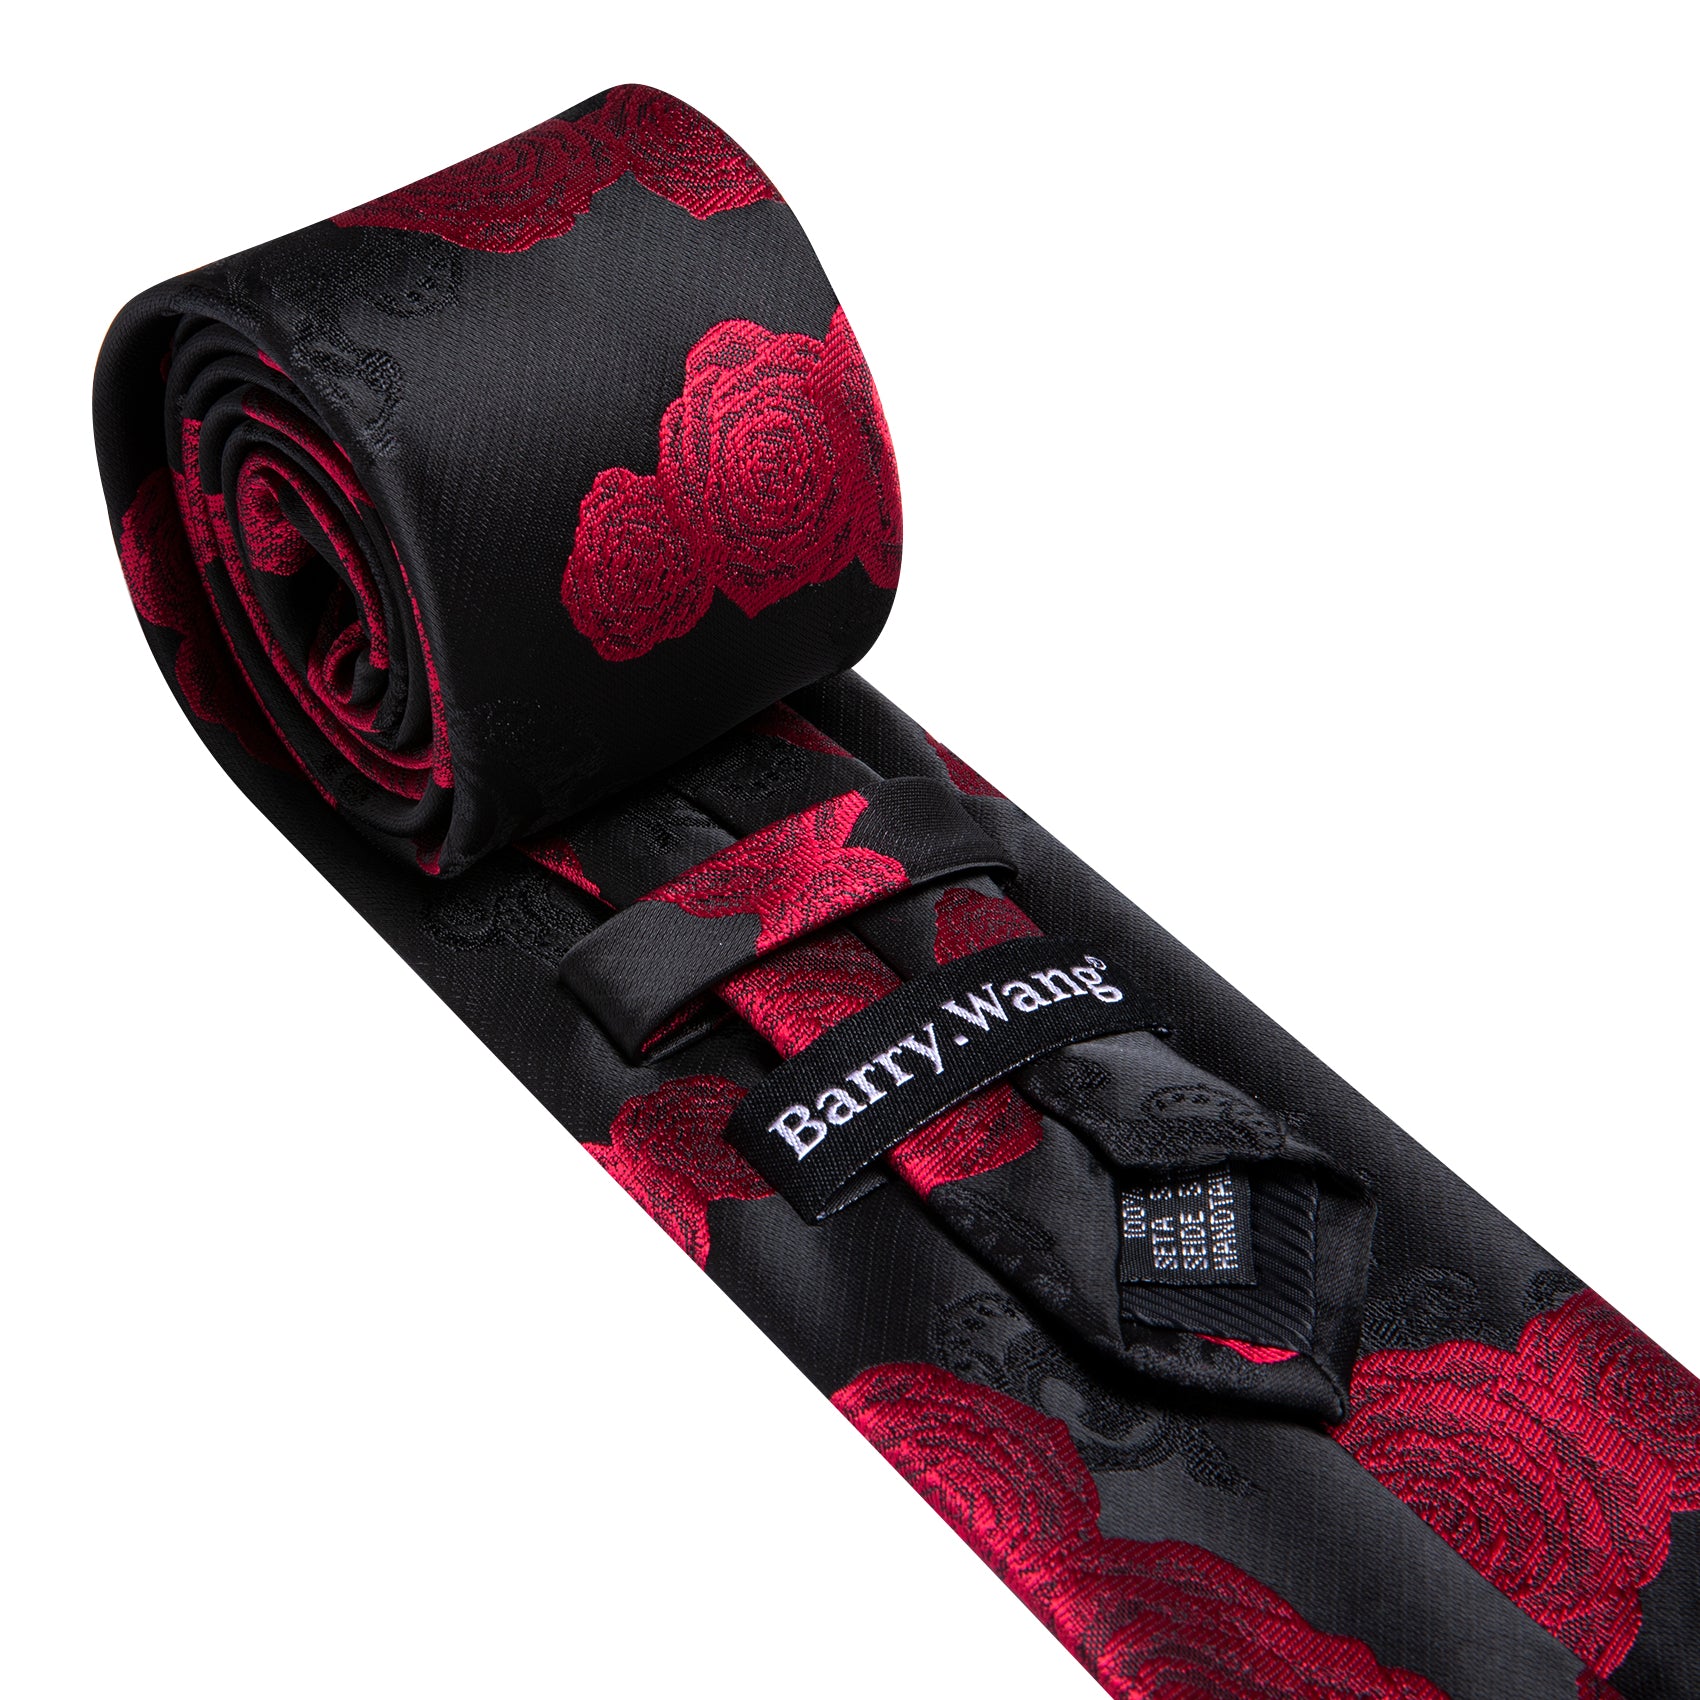 Black Red Flower Silk Tie Handkerchief Cufflinks Set